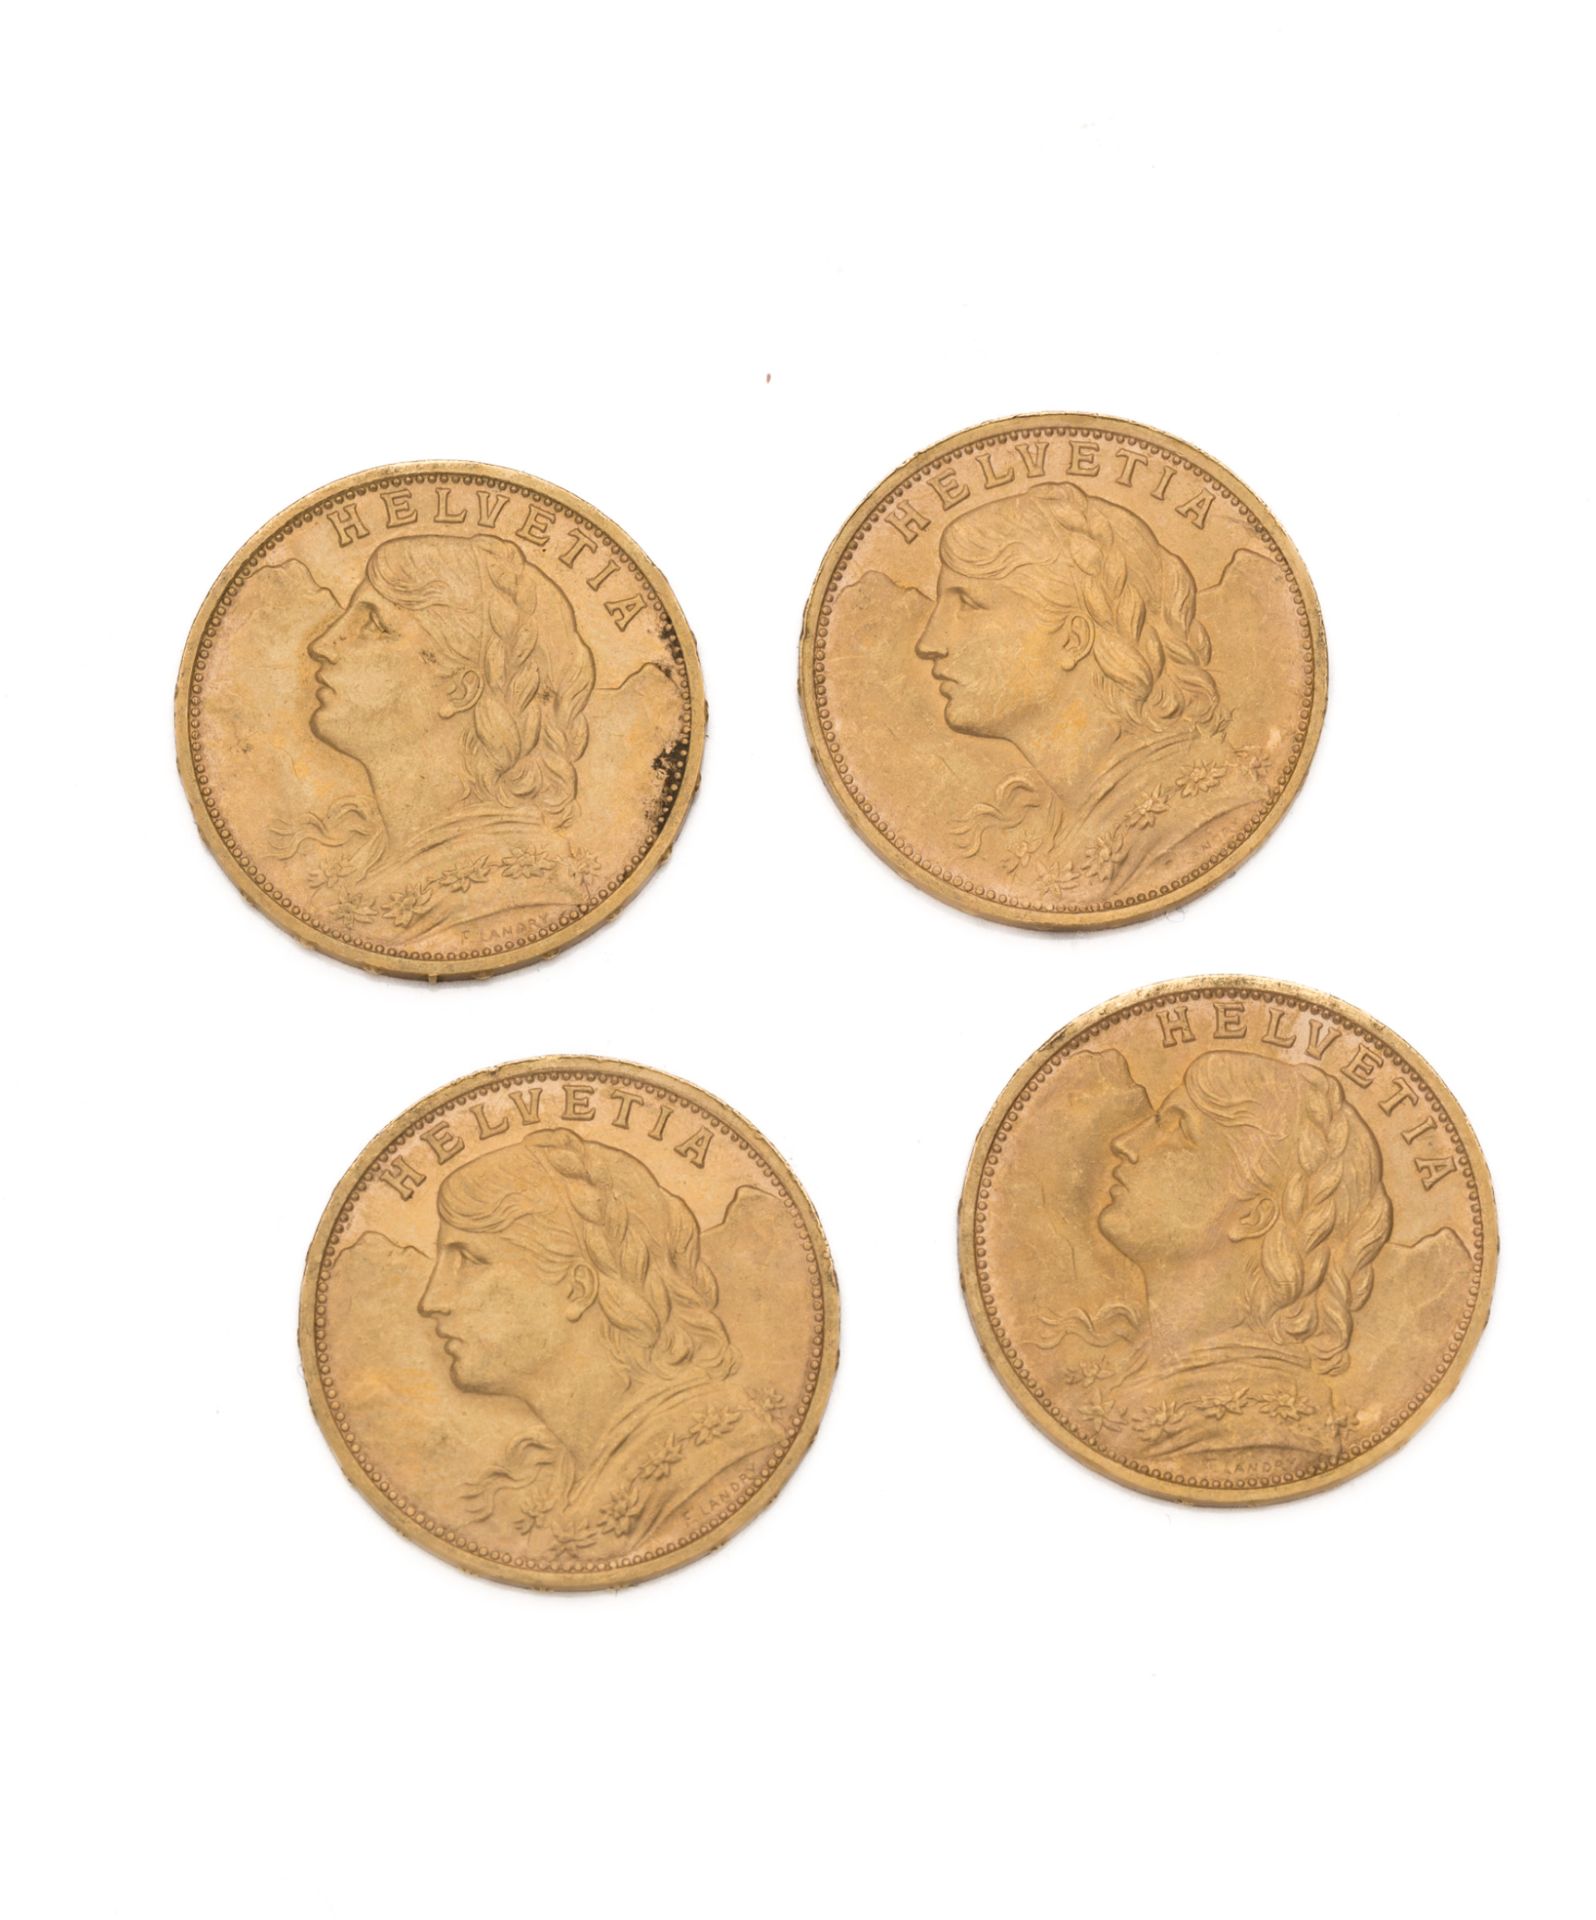 Null SUIZA
20 liras de oro, Helvetia. 1927 (3 ejemplares) y 1930
Peso : 25,80 g